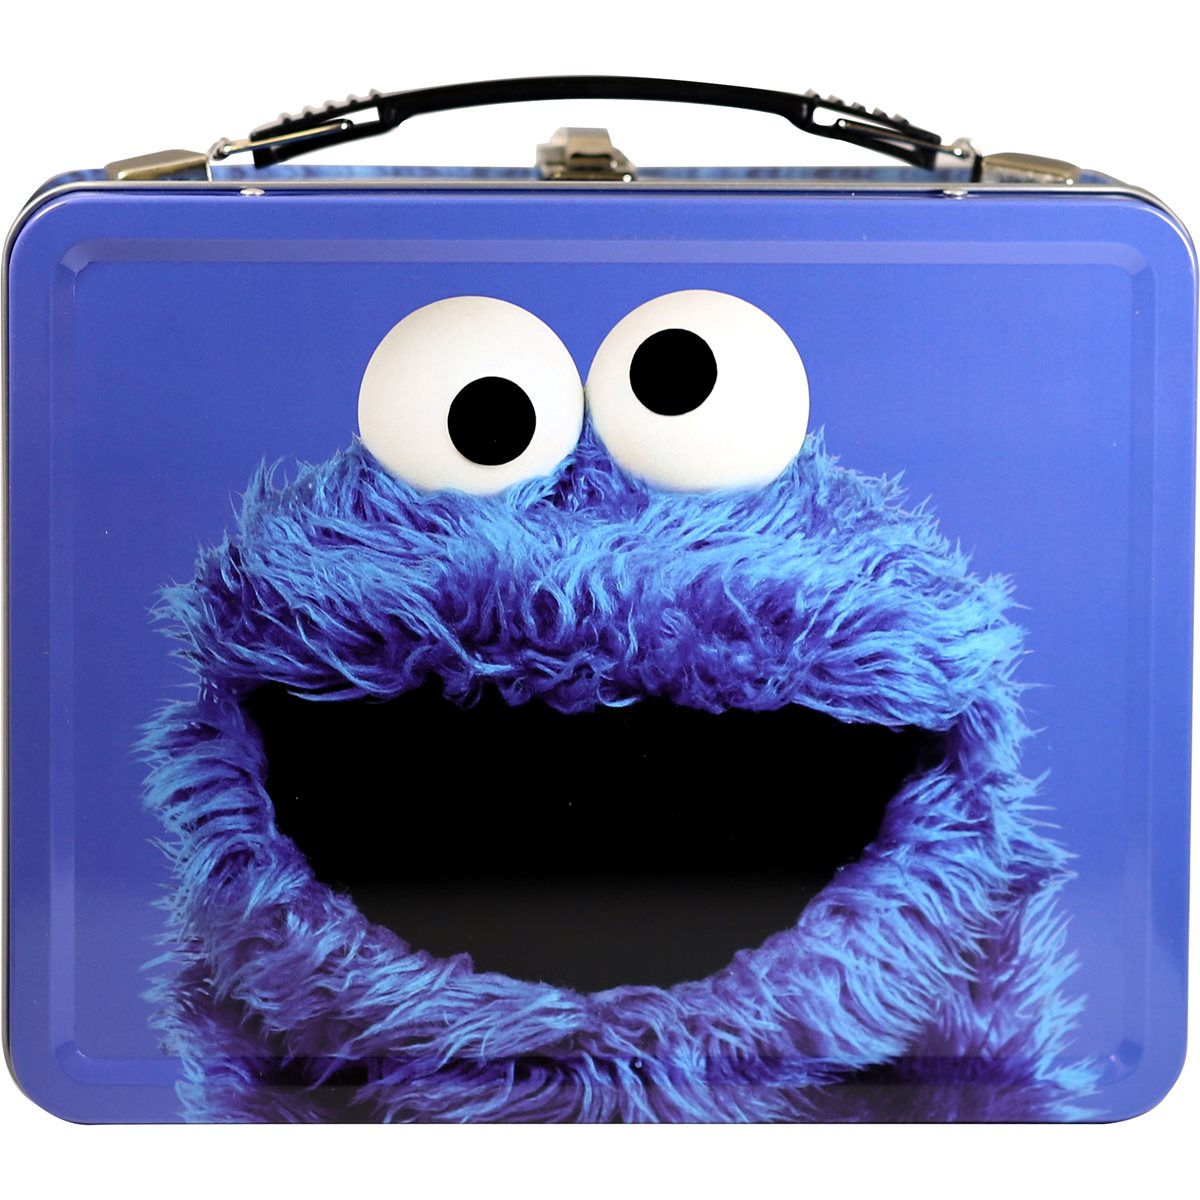 Sesame Street launching new Cookie Monster NFT - boing - Boing